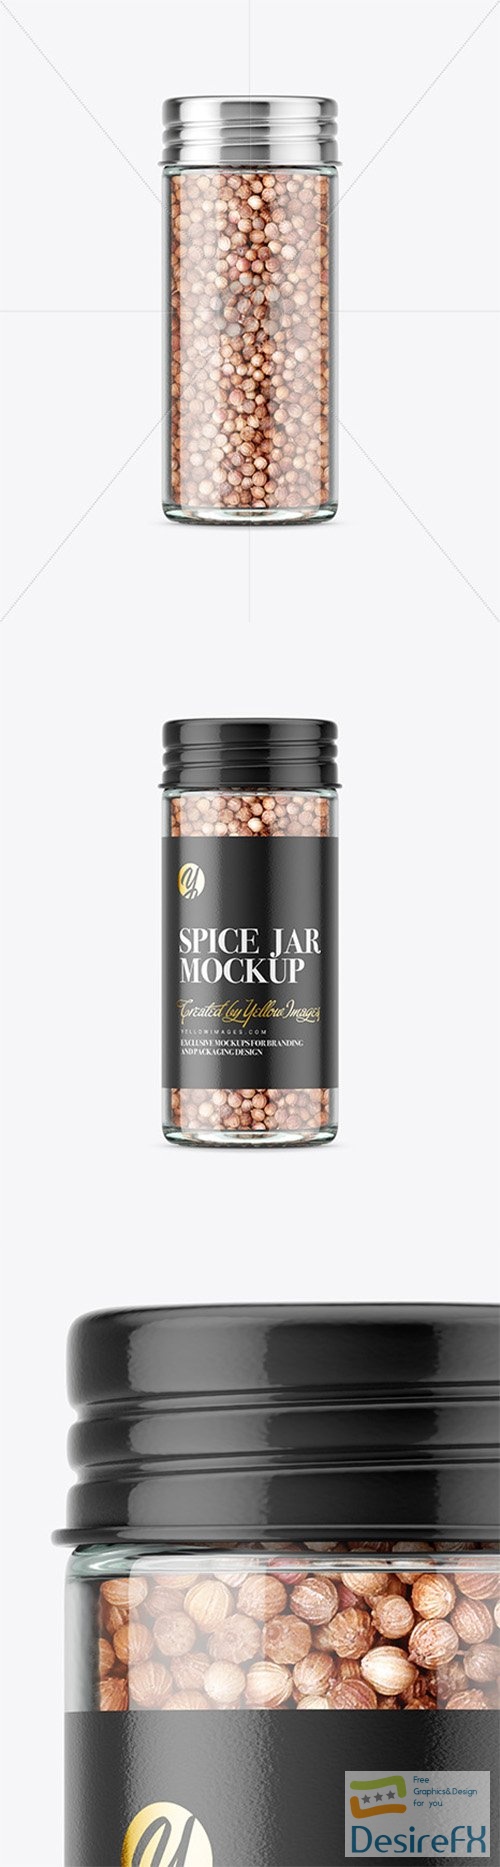 Spice Jar with Coriander Mockup 80834 TIF